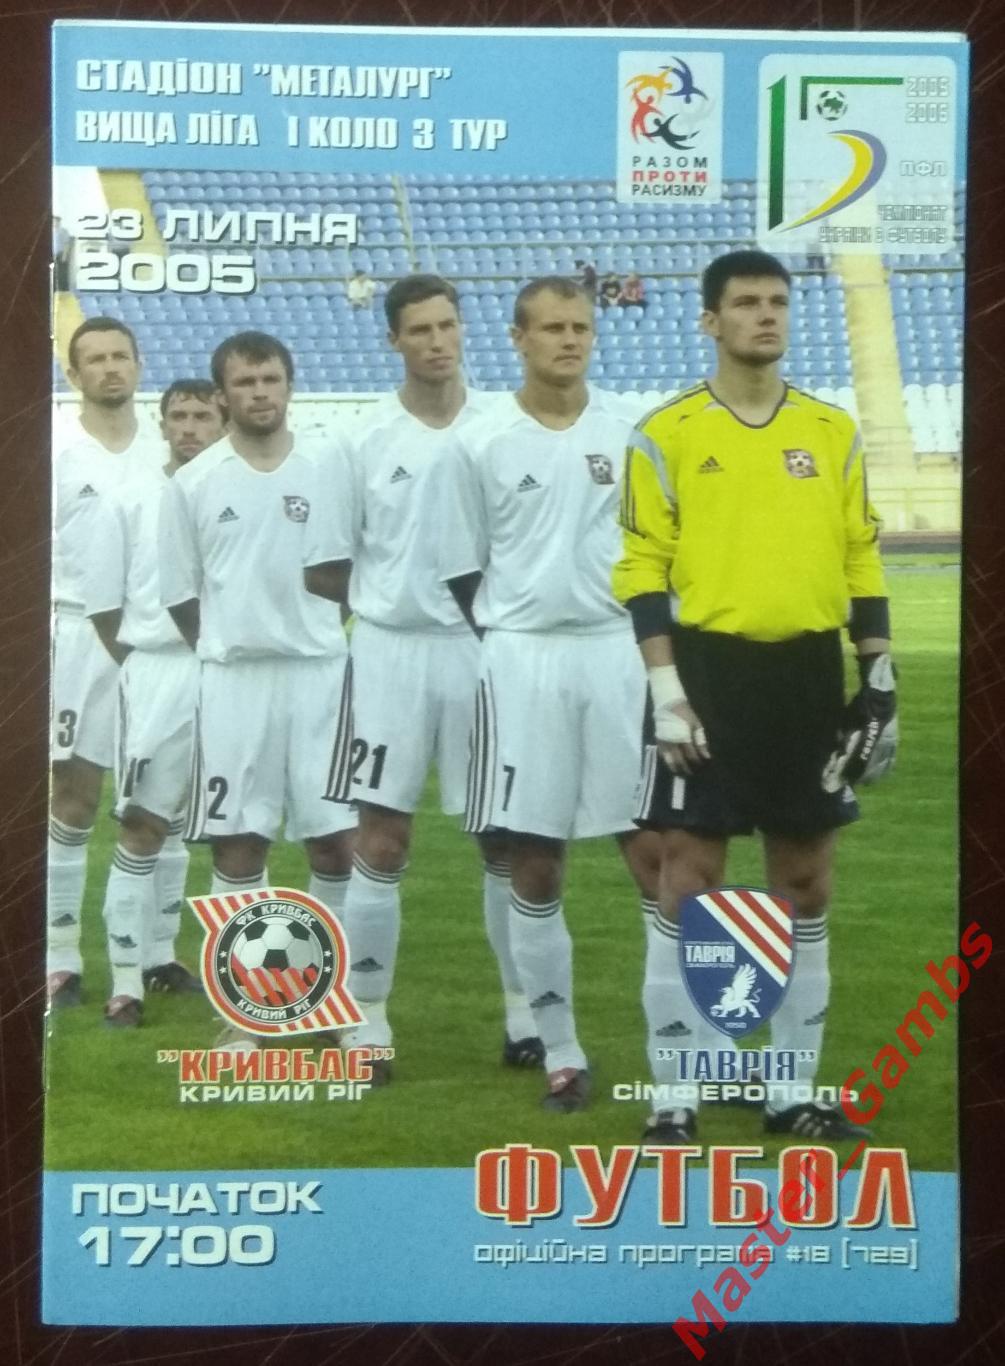 Кривбасс Кривой Рог - Таврия Симферополь 2005/2006*